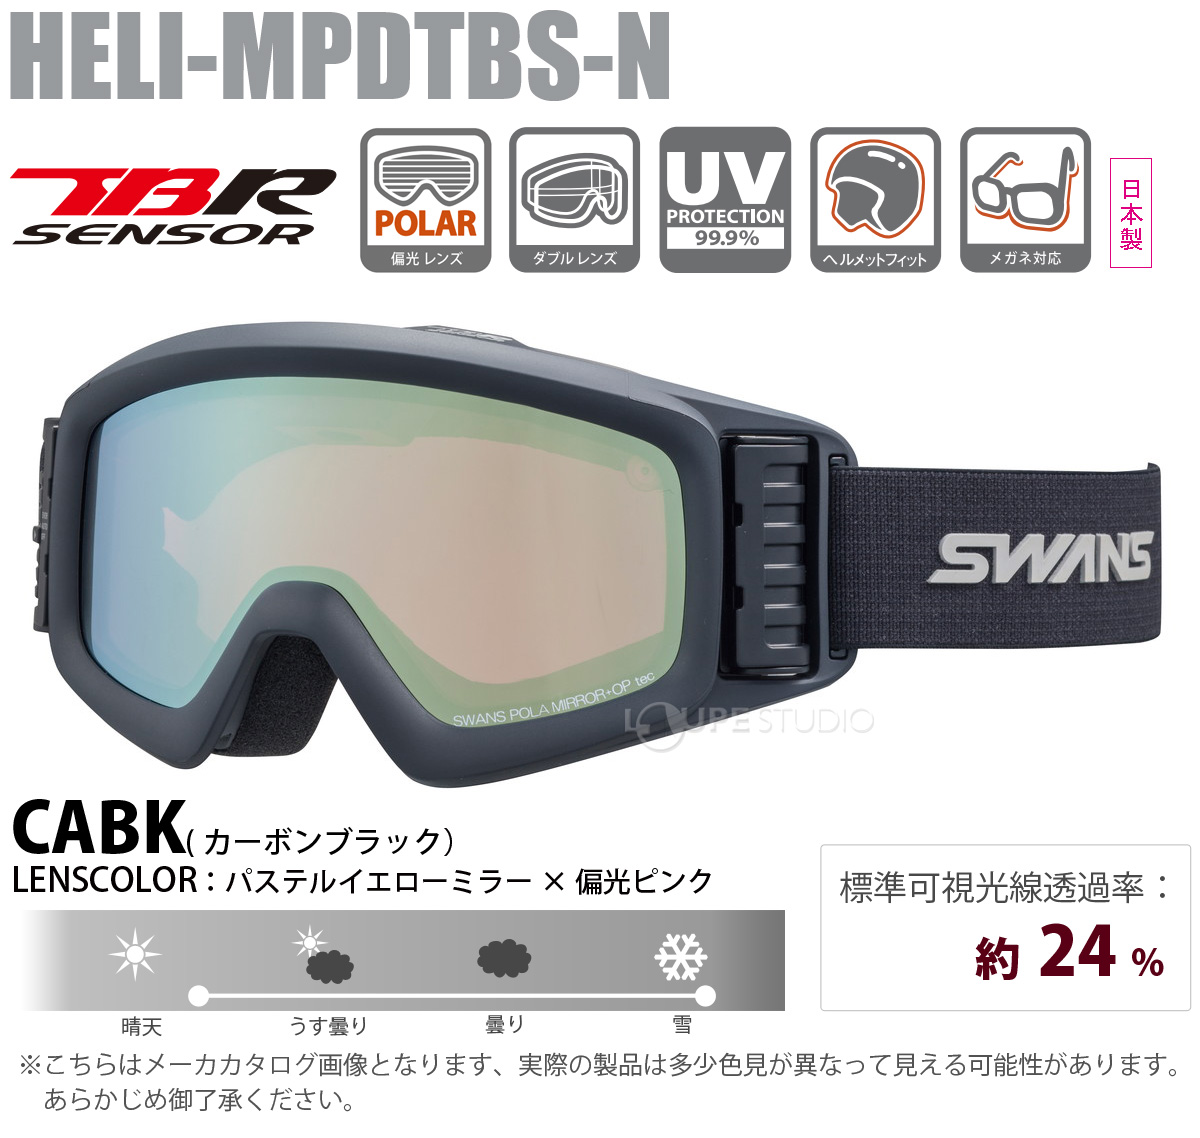 スノーゴーグル 眼鏡対応 スキー スノボ HELI ターボファン付きモデル 偏光レンズ ダブルレンズ HELI-MPDTBS-N CABK SWANS